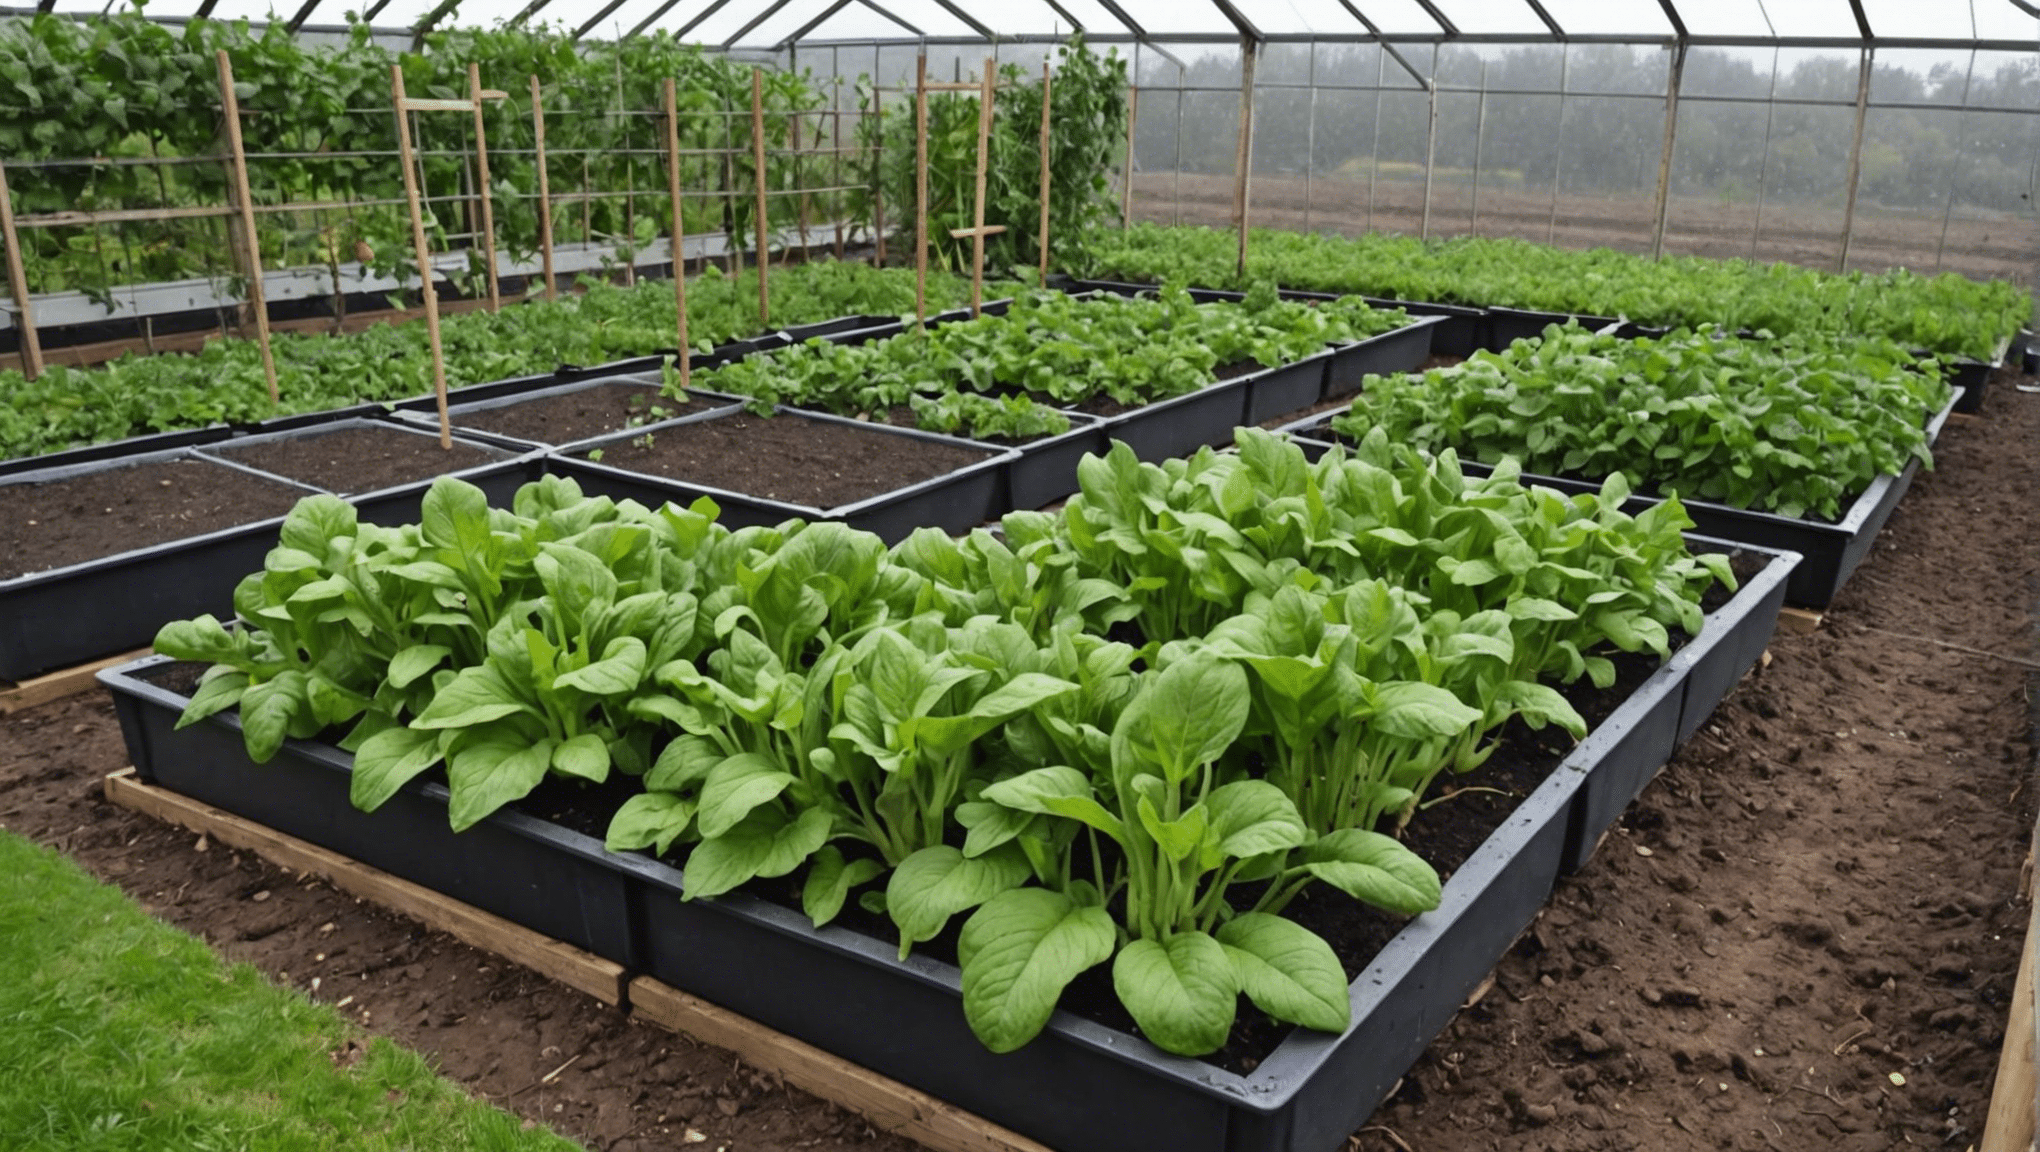 odkryj praktyczne wskazówki, jak uratować swój ogród warzywny po okresie intensywnego deszczu. wskazówki i techniki, dzięki którym Twój ogród stanie na nogi.